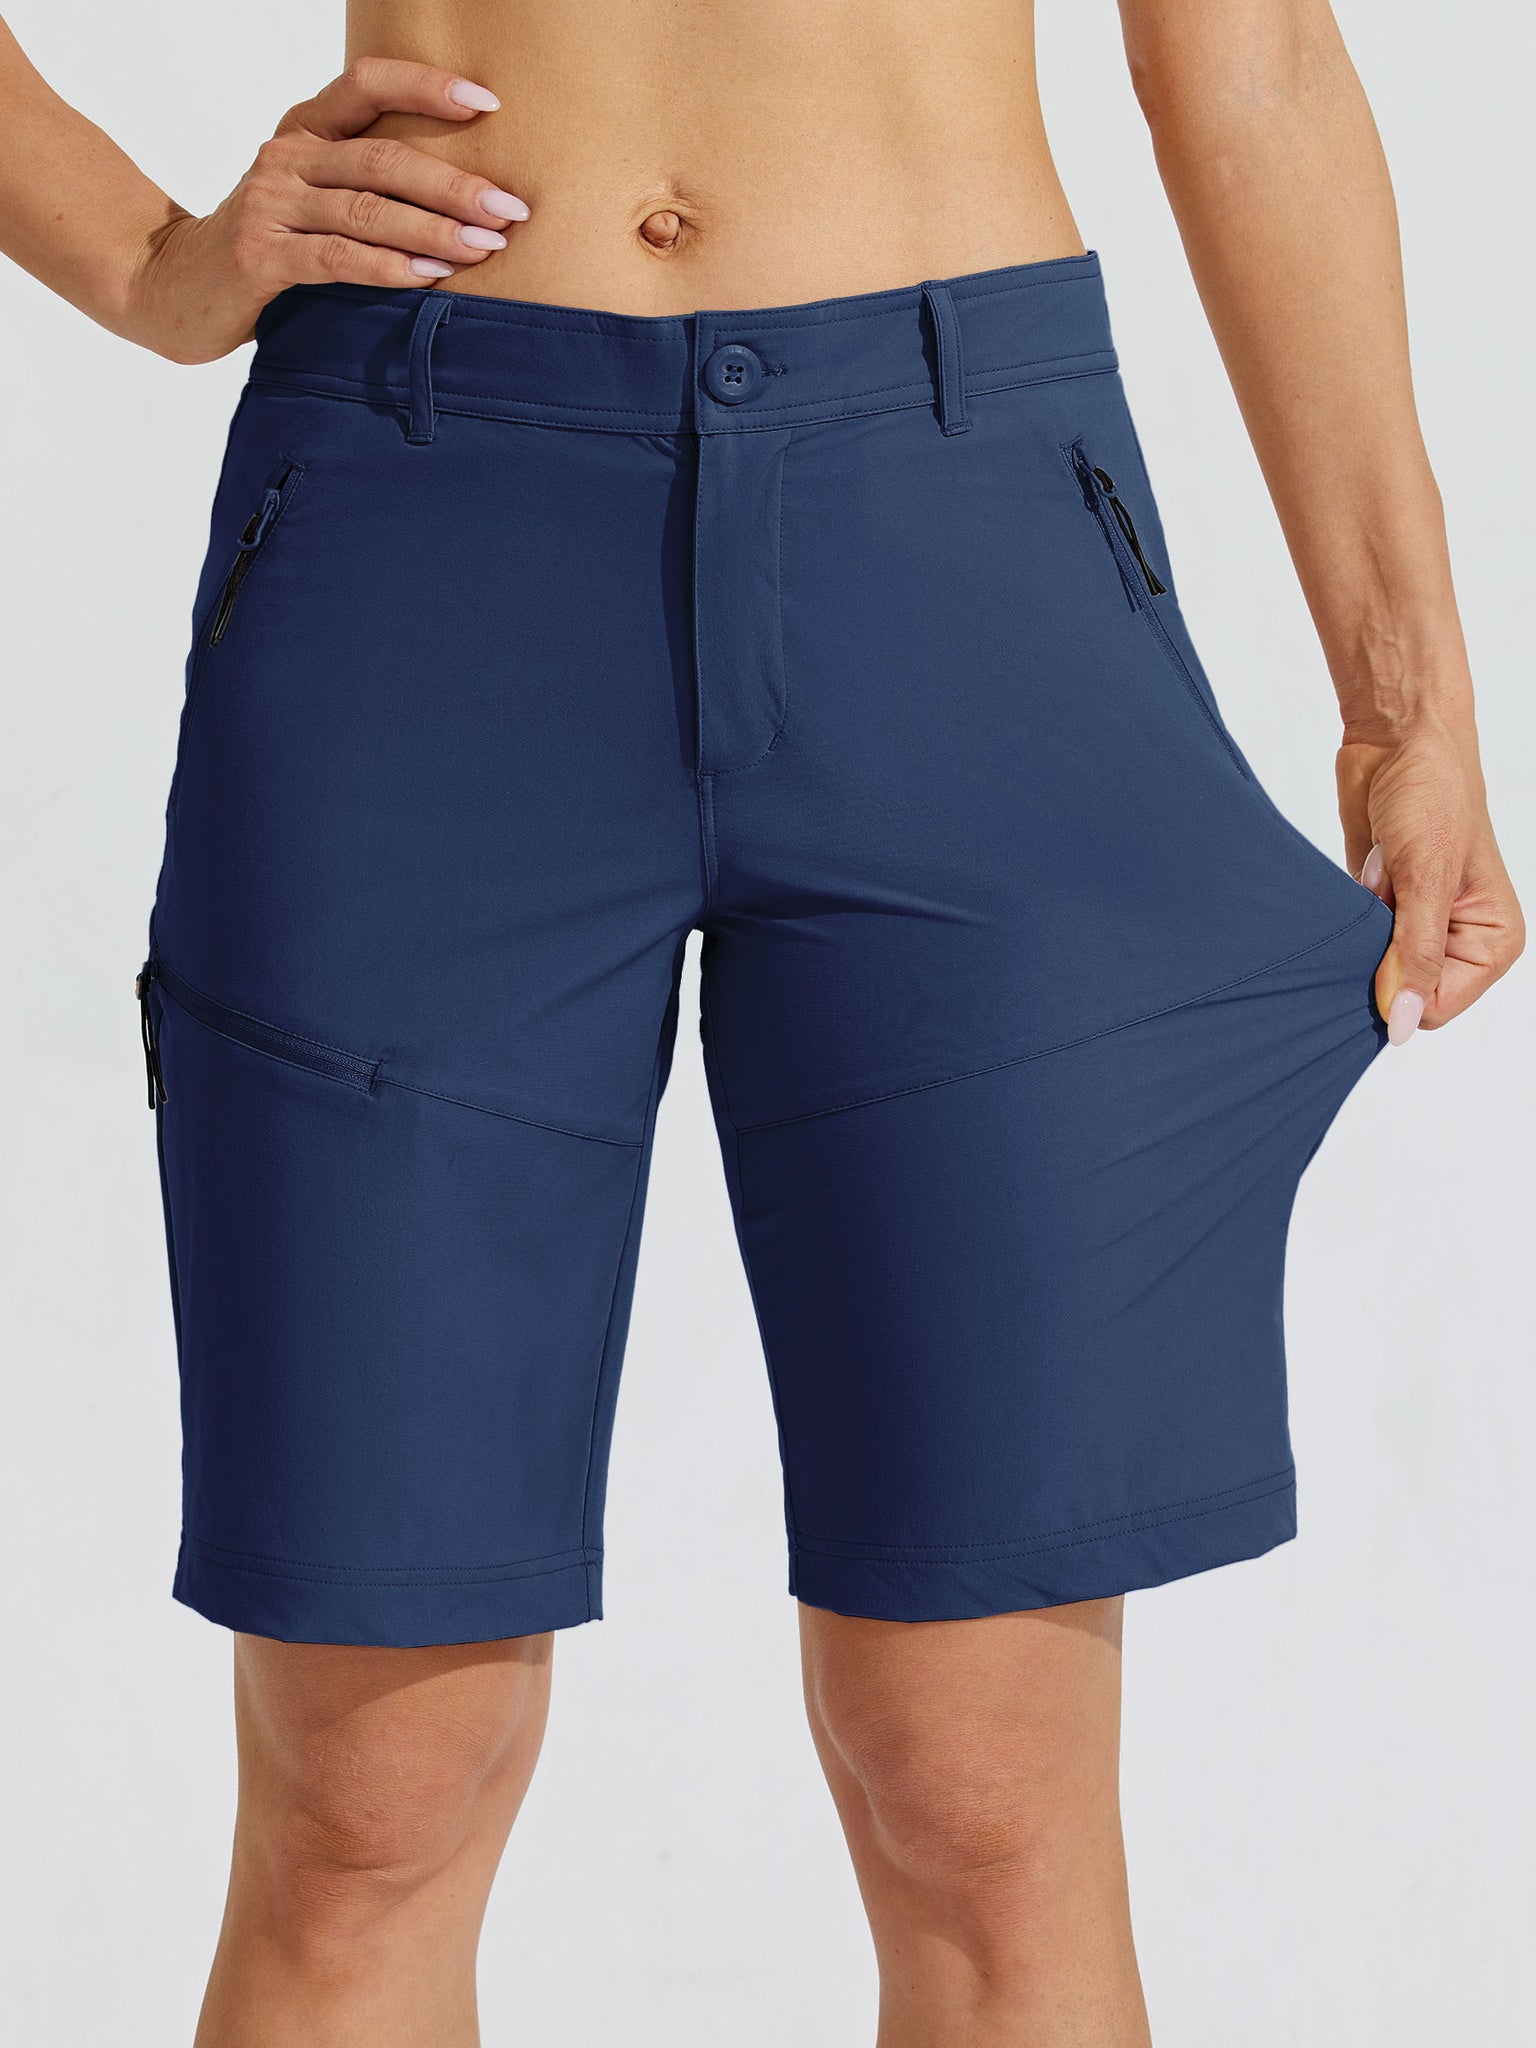 Women's Slim Leg Golf Shorts 10Inch_Navy_model2